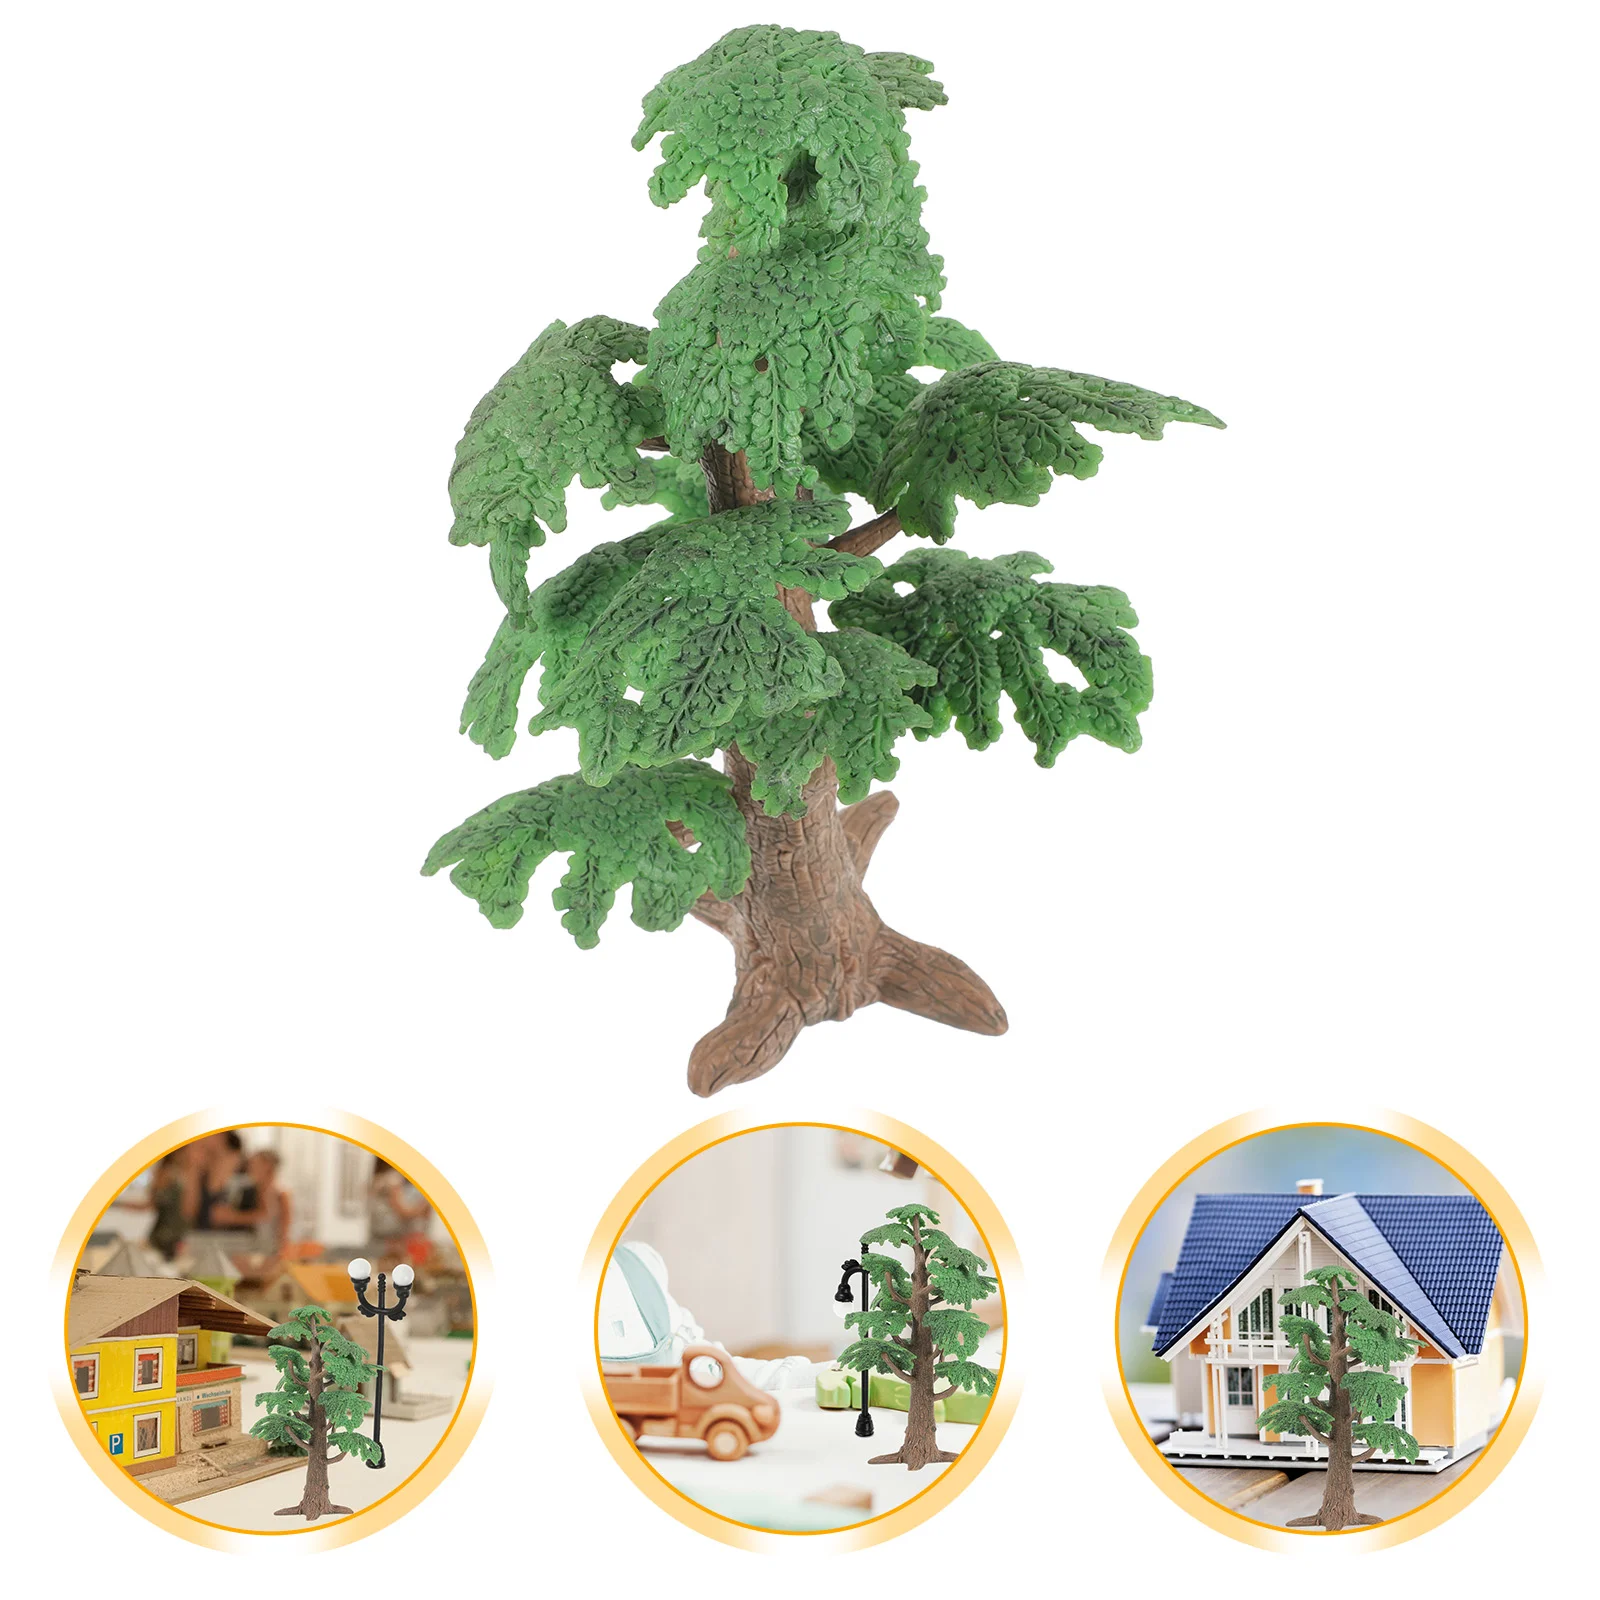 

1 шт. моделированная модель деревьев в виде пейзажа, миниатюрная модель сосны, Cypress, Забавная детская игрушечная елка, украшение для деревьев, модель для дома